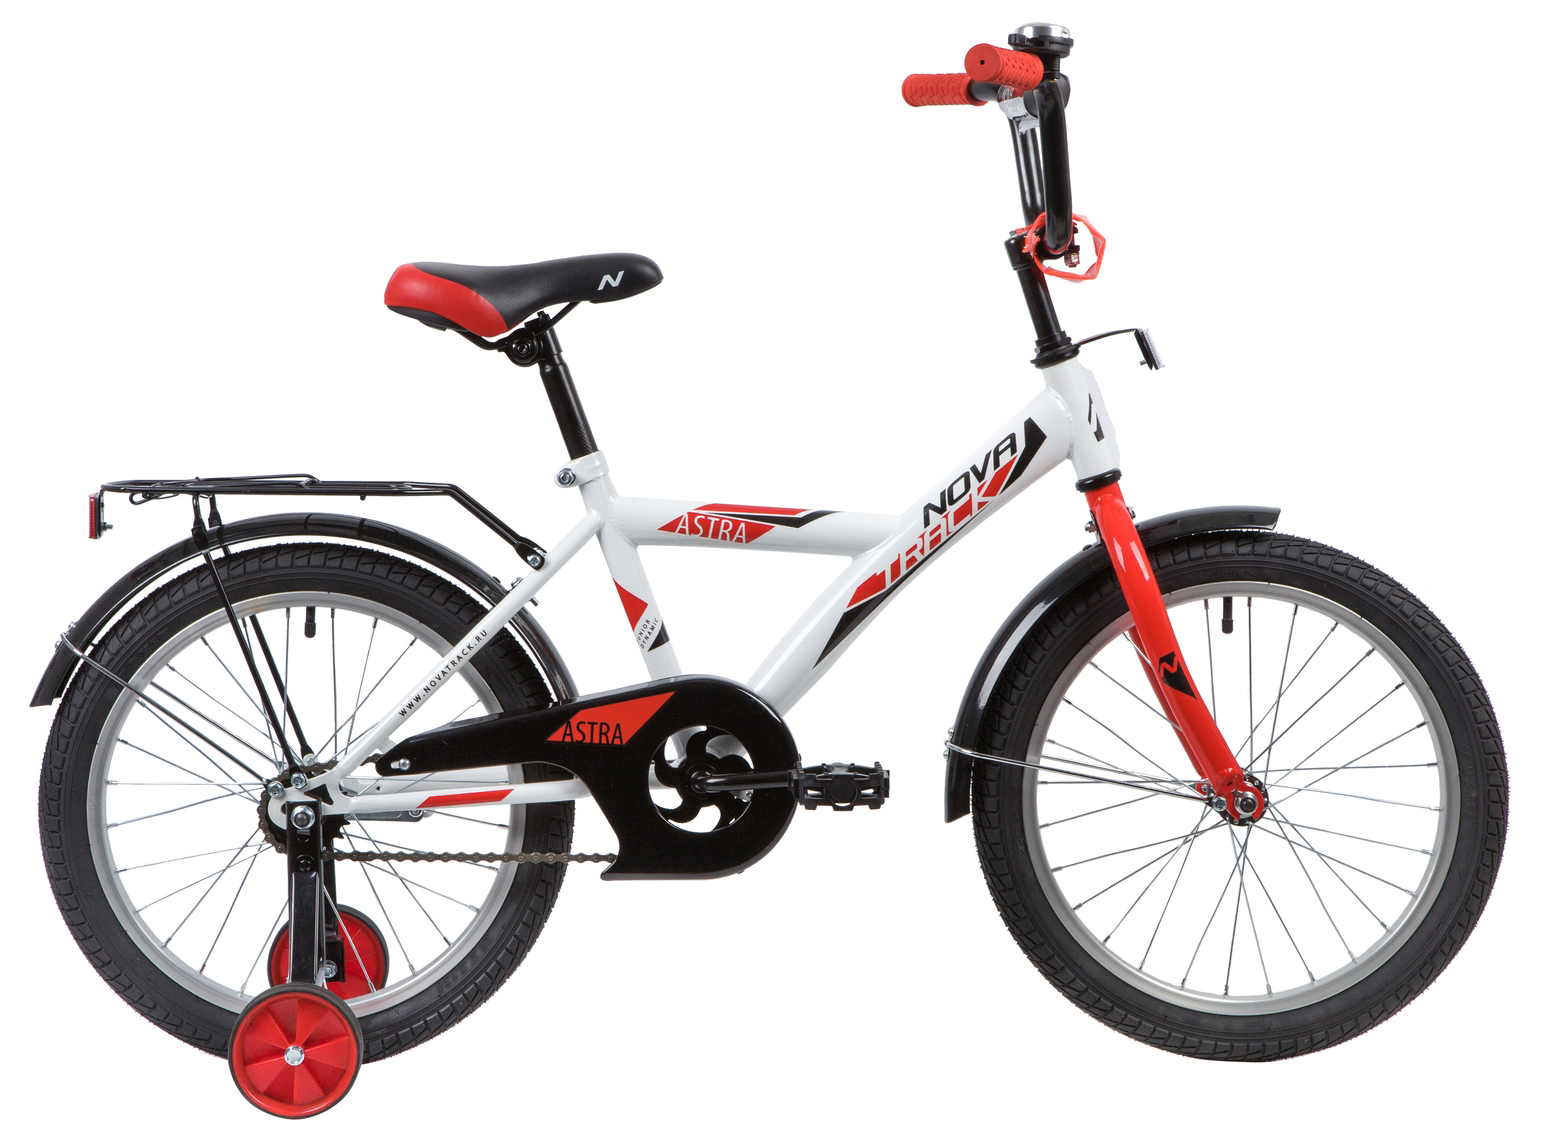  Отзывы о Детском велосипеде Novatrack Astra 18 2020